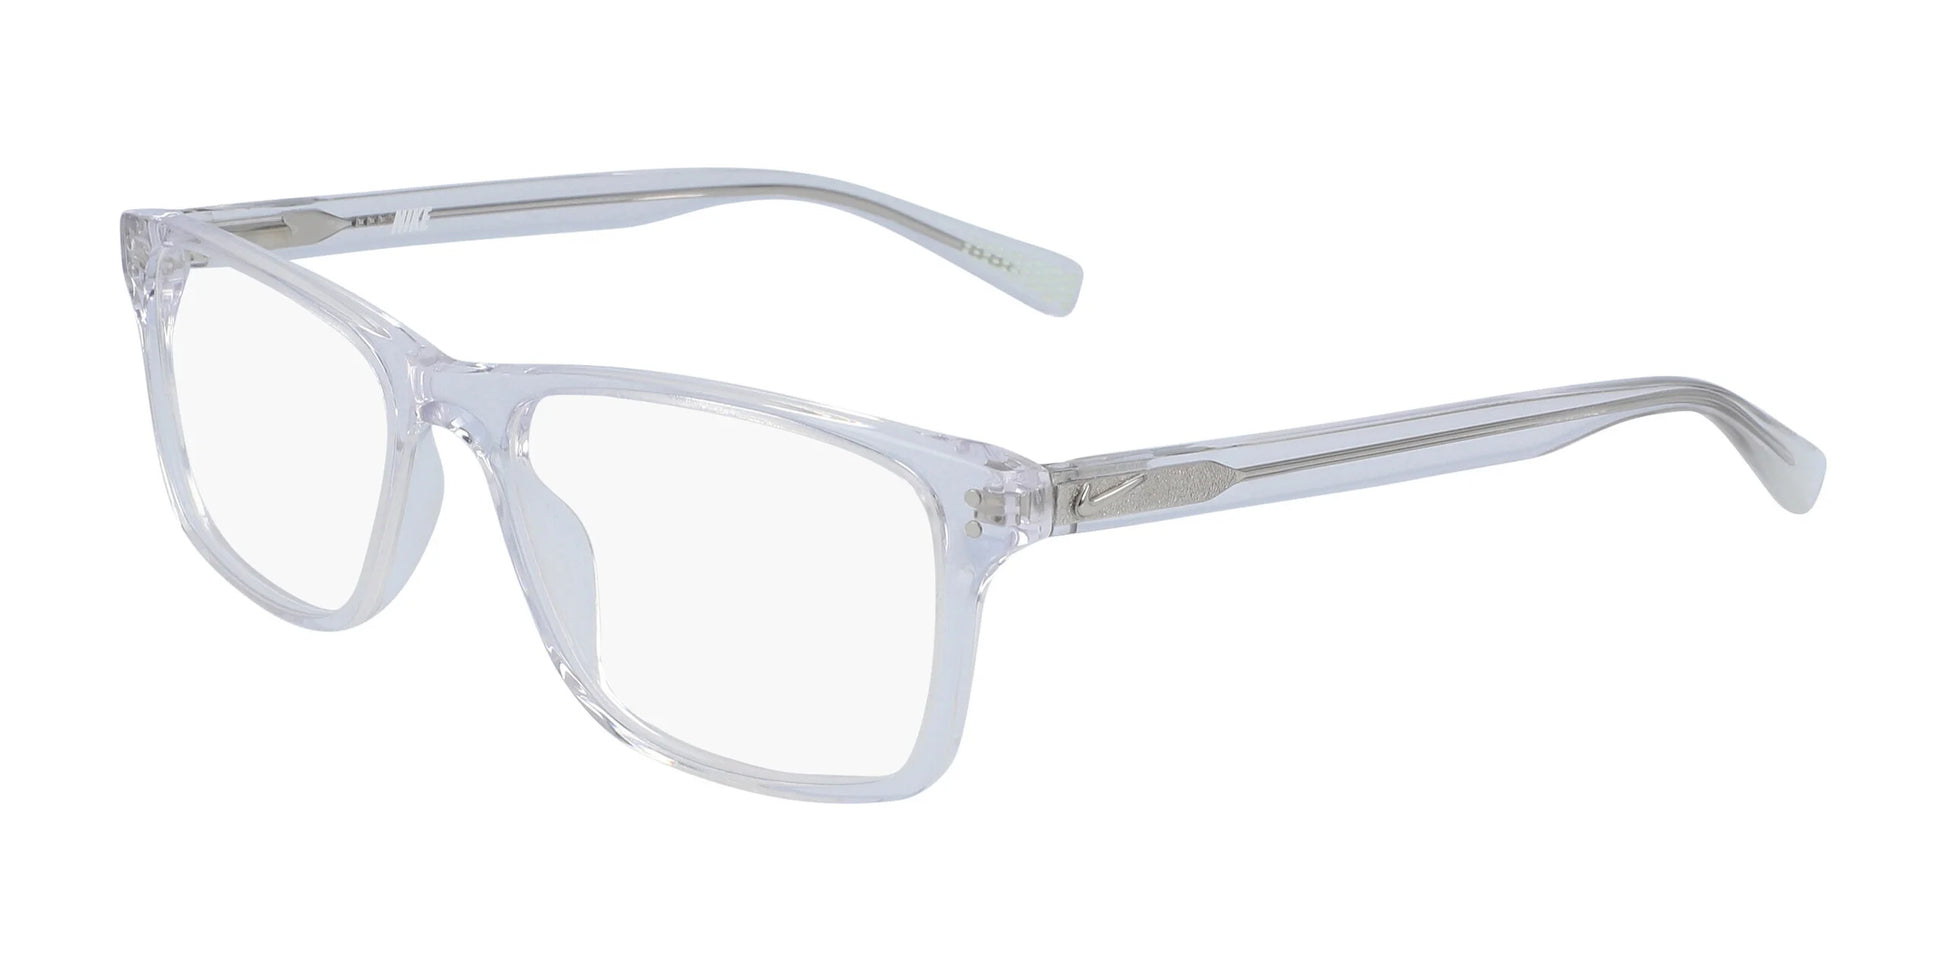 Nike 7246 Eyeglasses Clear